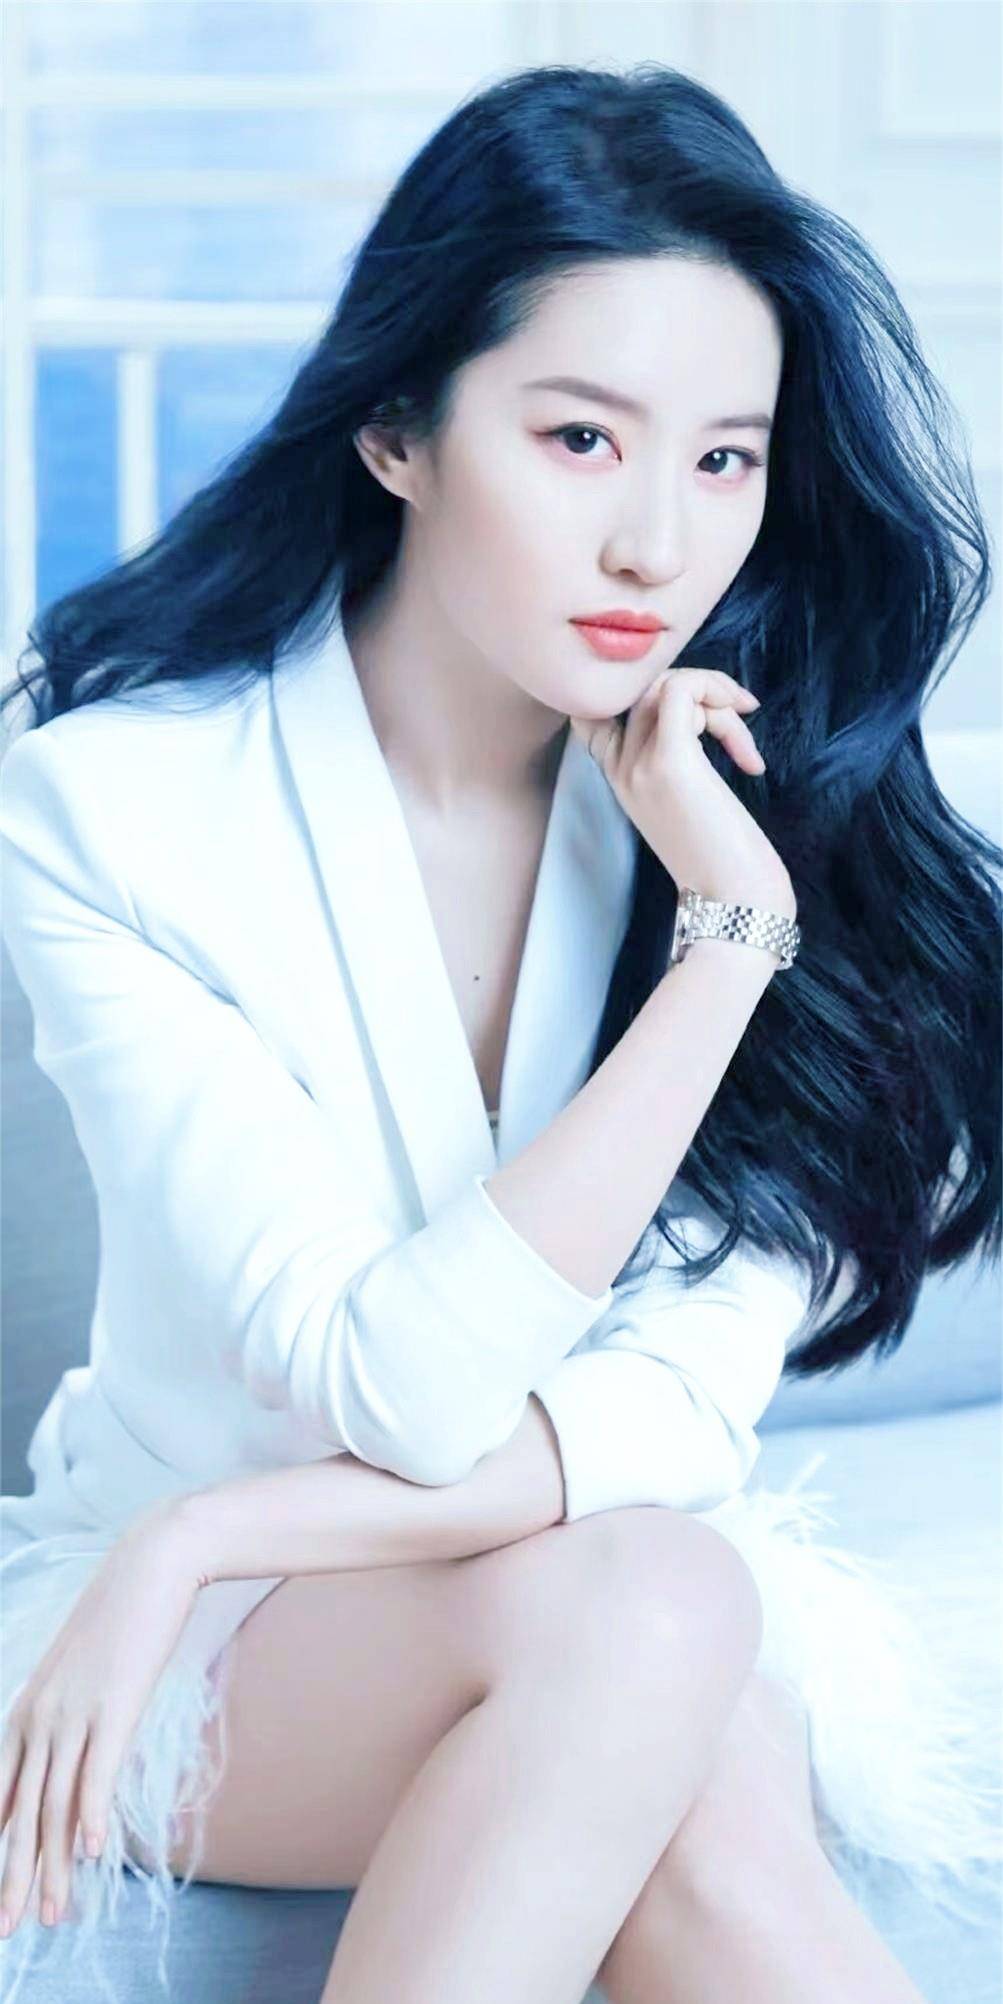 原创娱乐圈影视女演员歌手刘亦菲写真相片二十一